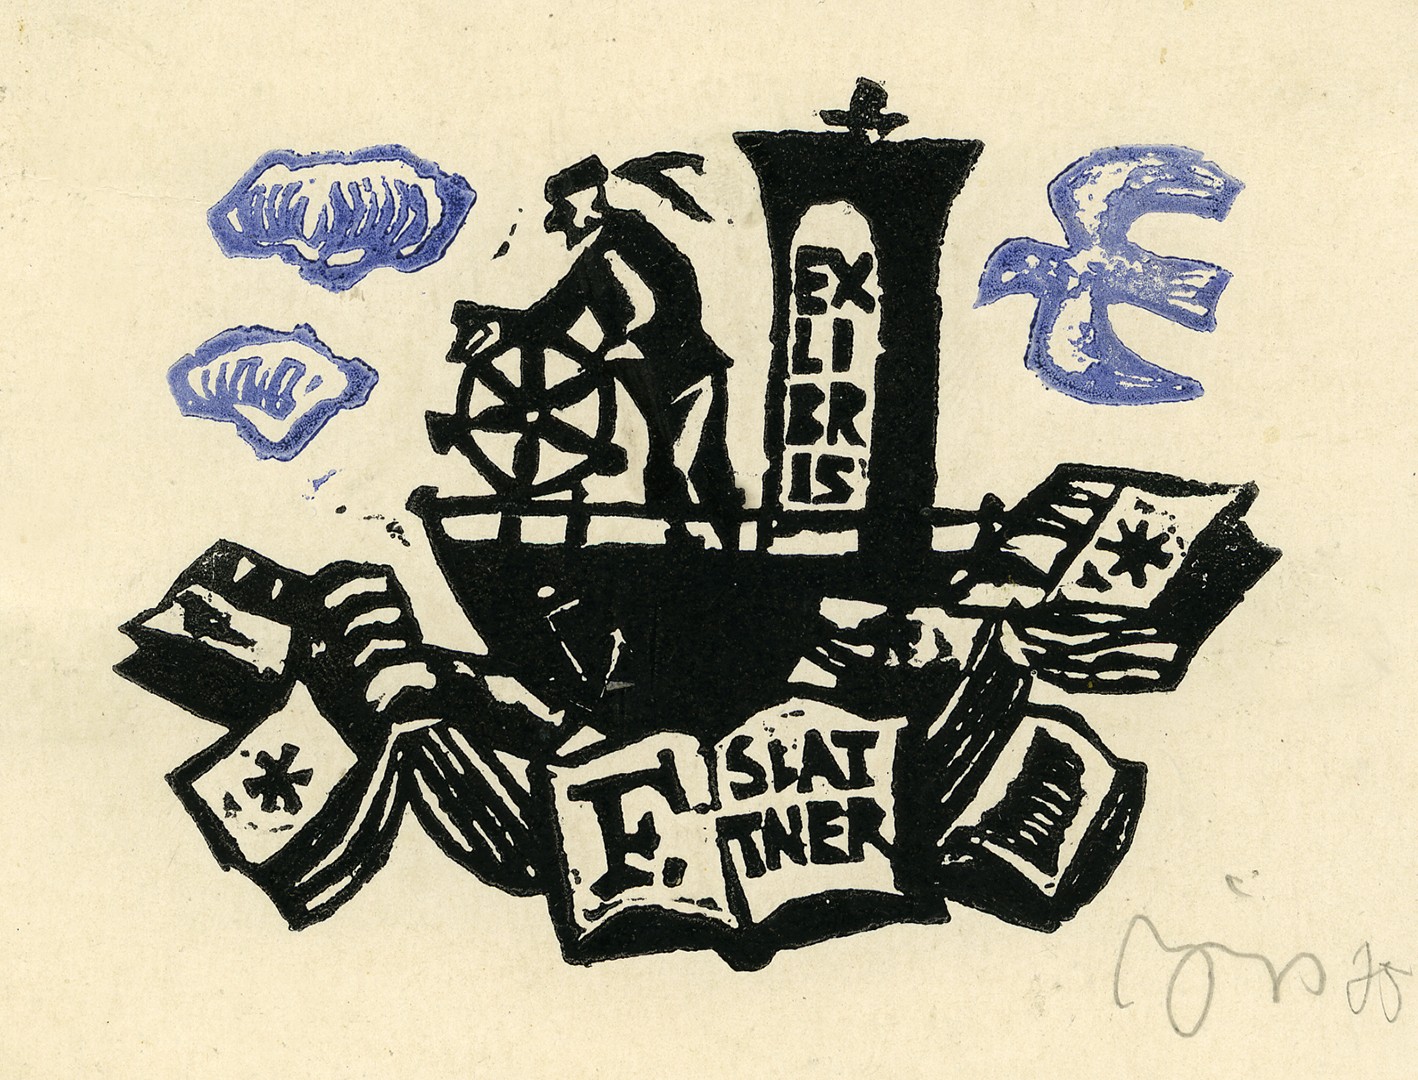 Franzo Slattnerio ekslibrisas. Vilnius, 1975 m. Popierius, linoraižinys, dvi spalvos; 65 x 85 (82 x 106) mm. Lietuvos nacionalinis muziejus